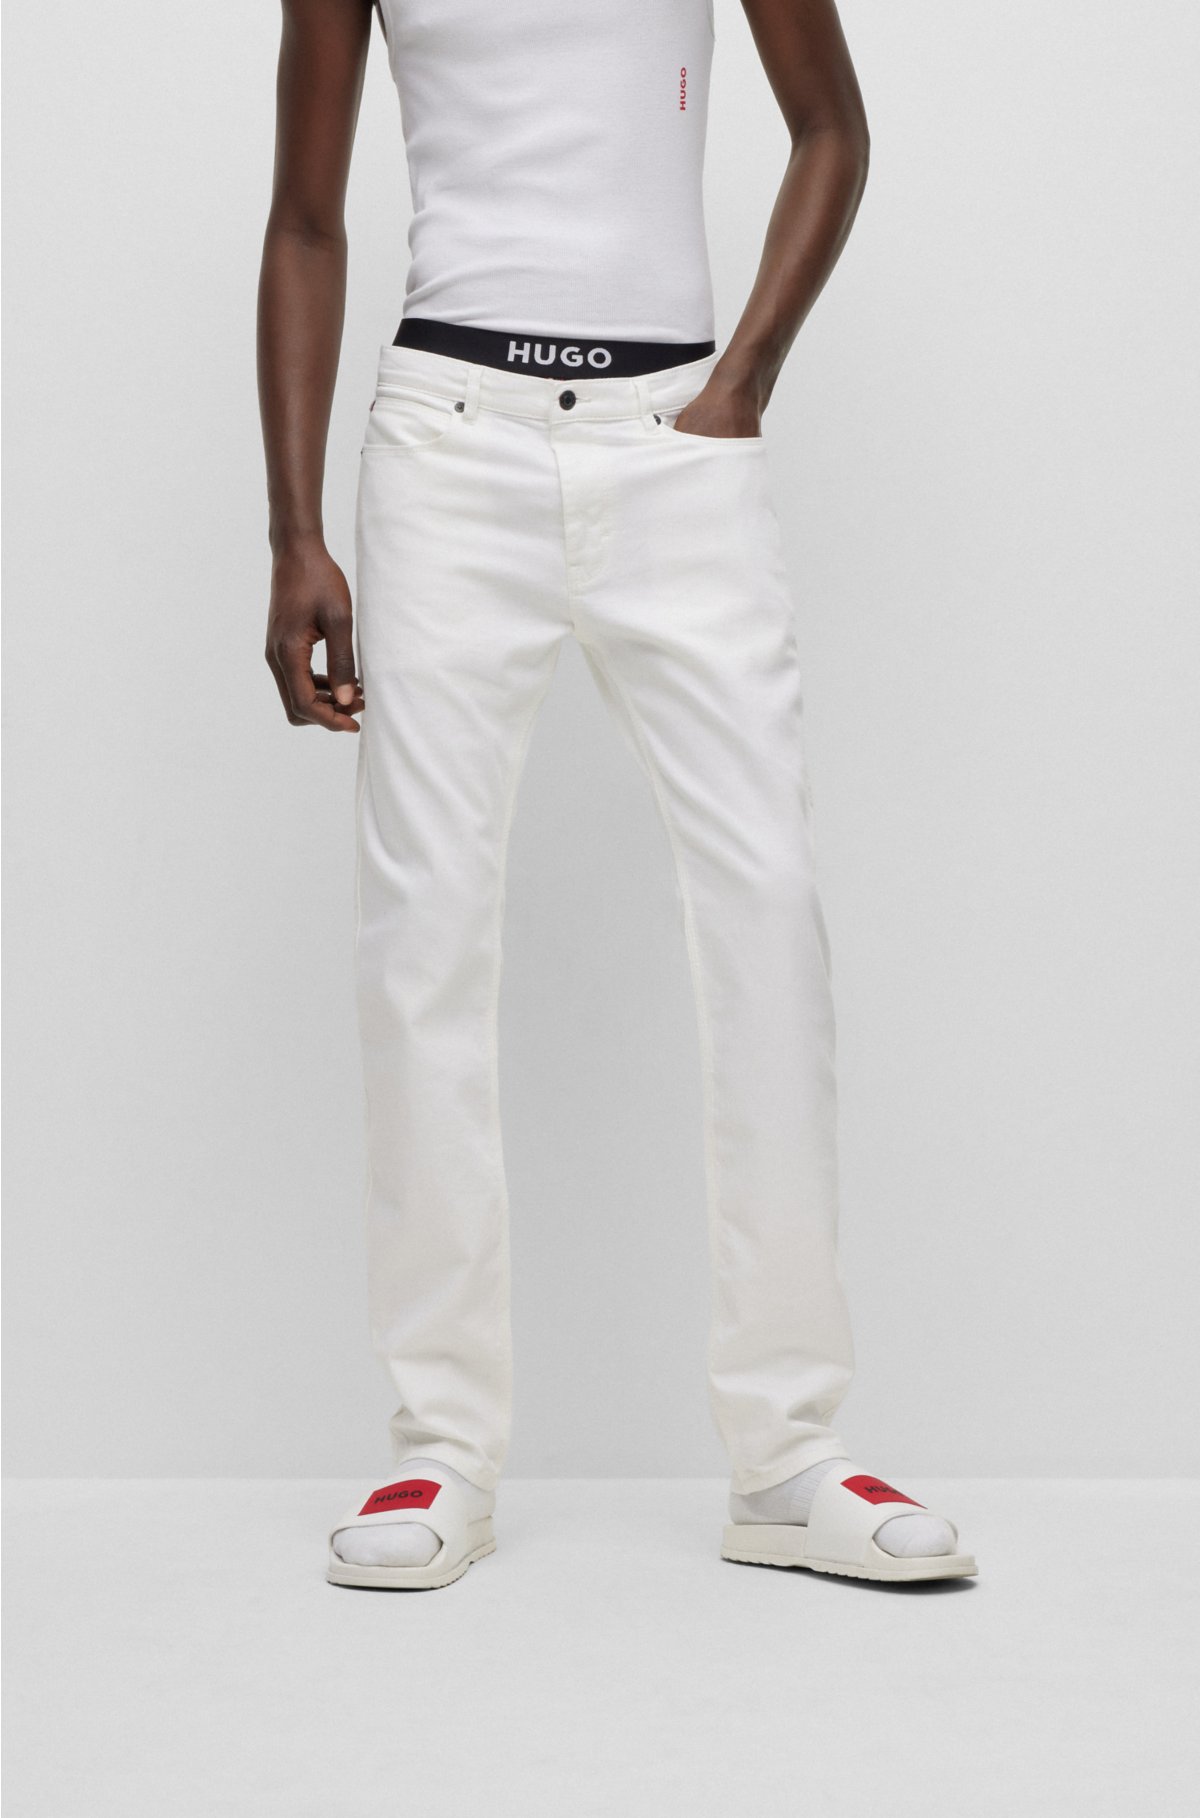 Slim Fit Original Pepe London Denims Jeans at Rs 635/piece in